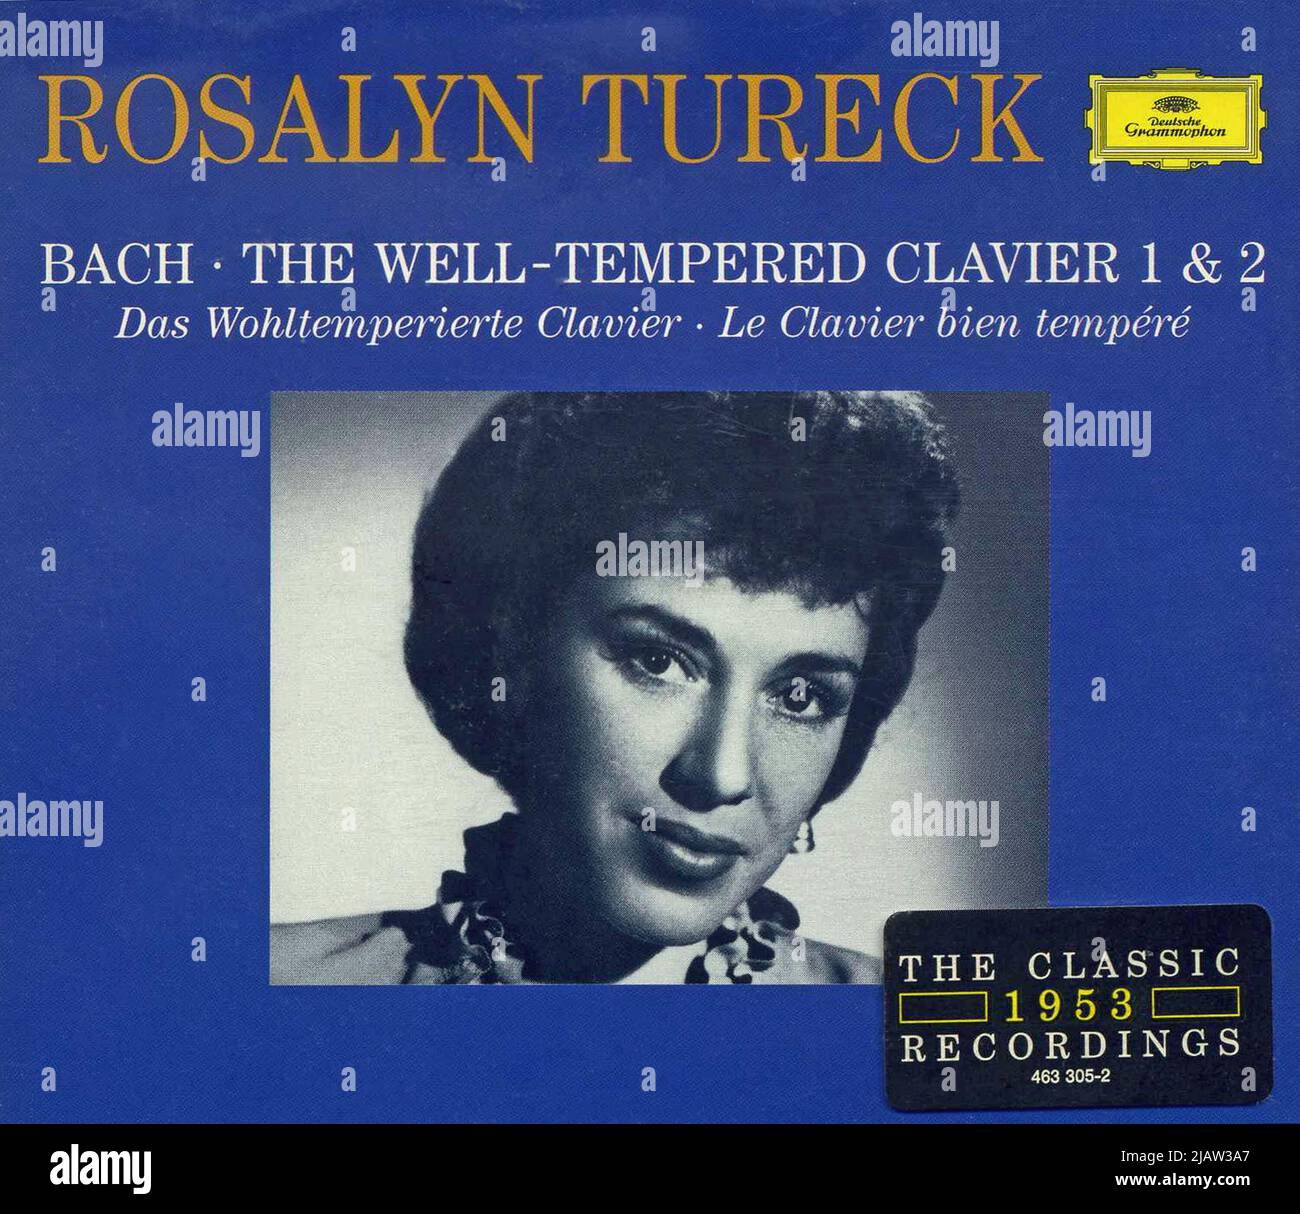 Cubierta de CD. 'El Clavier 1 y 2 bien templado'. J. S. Bach. Rosalyn Tureck. Foto de stock